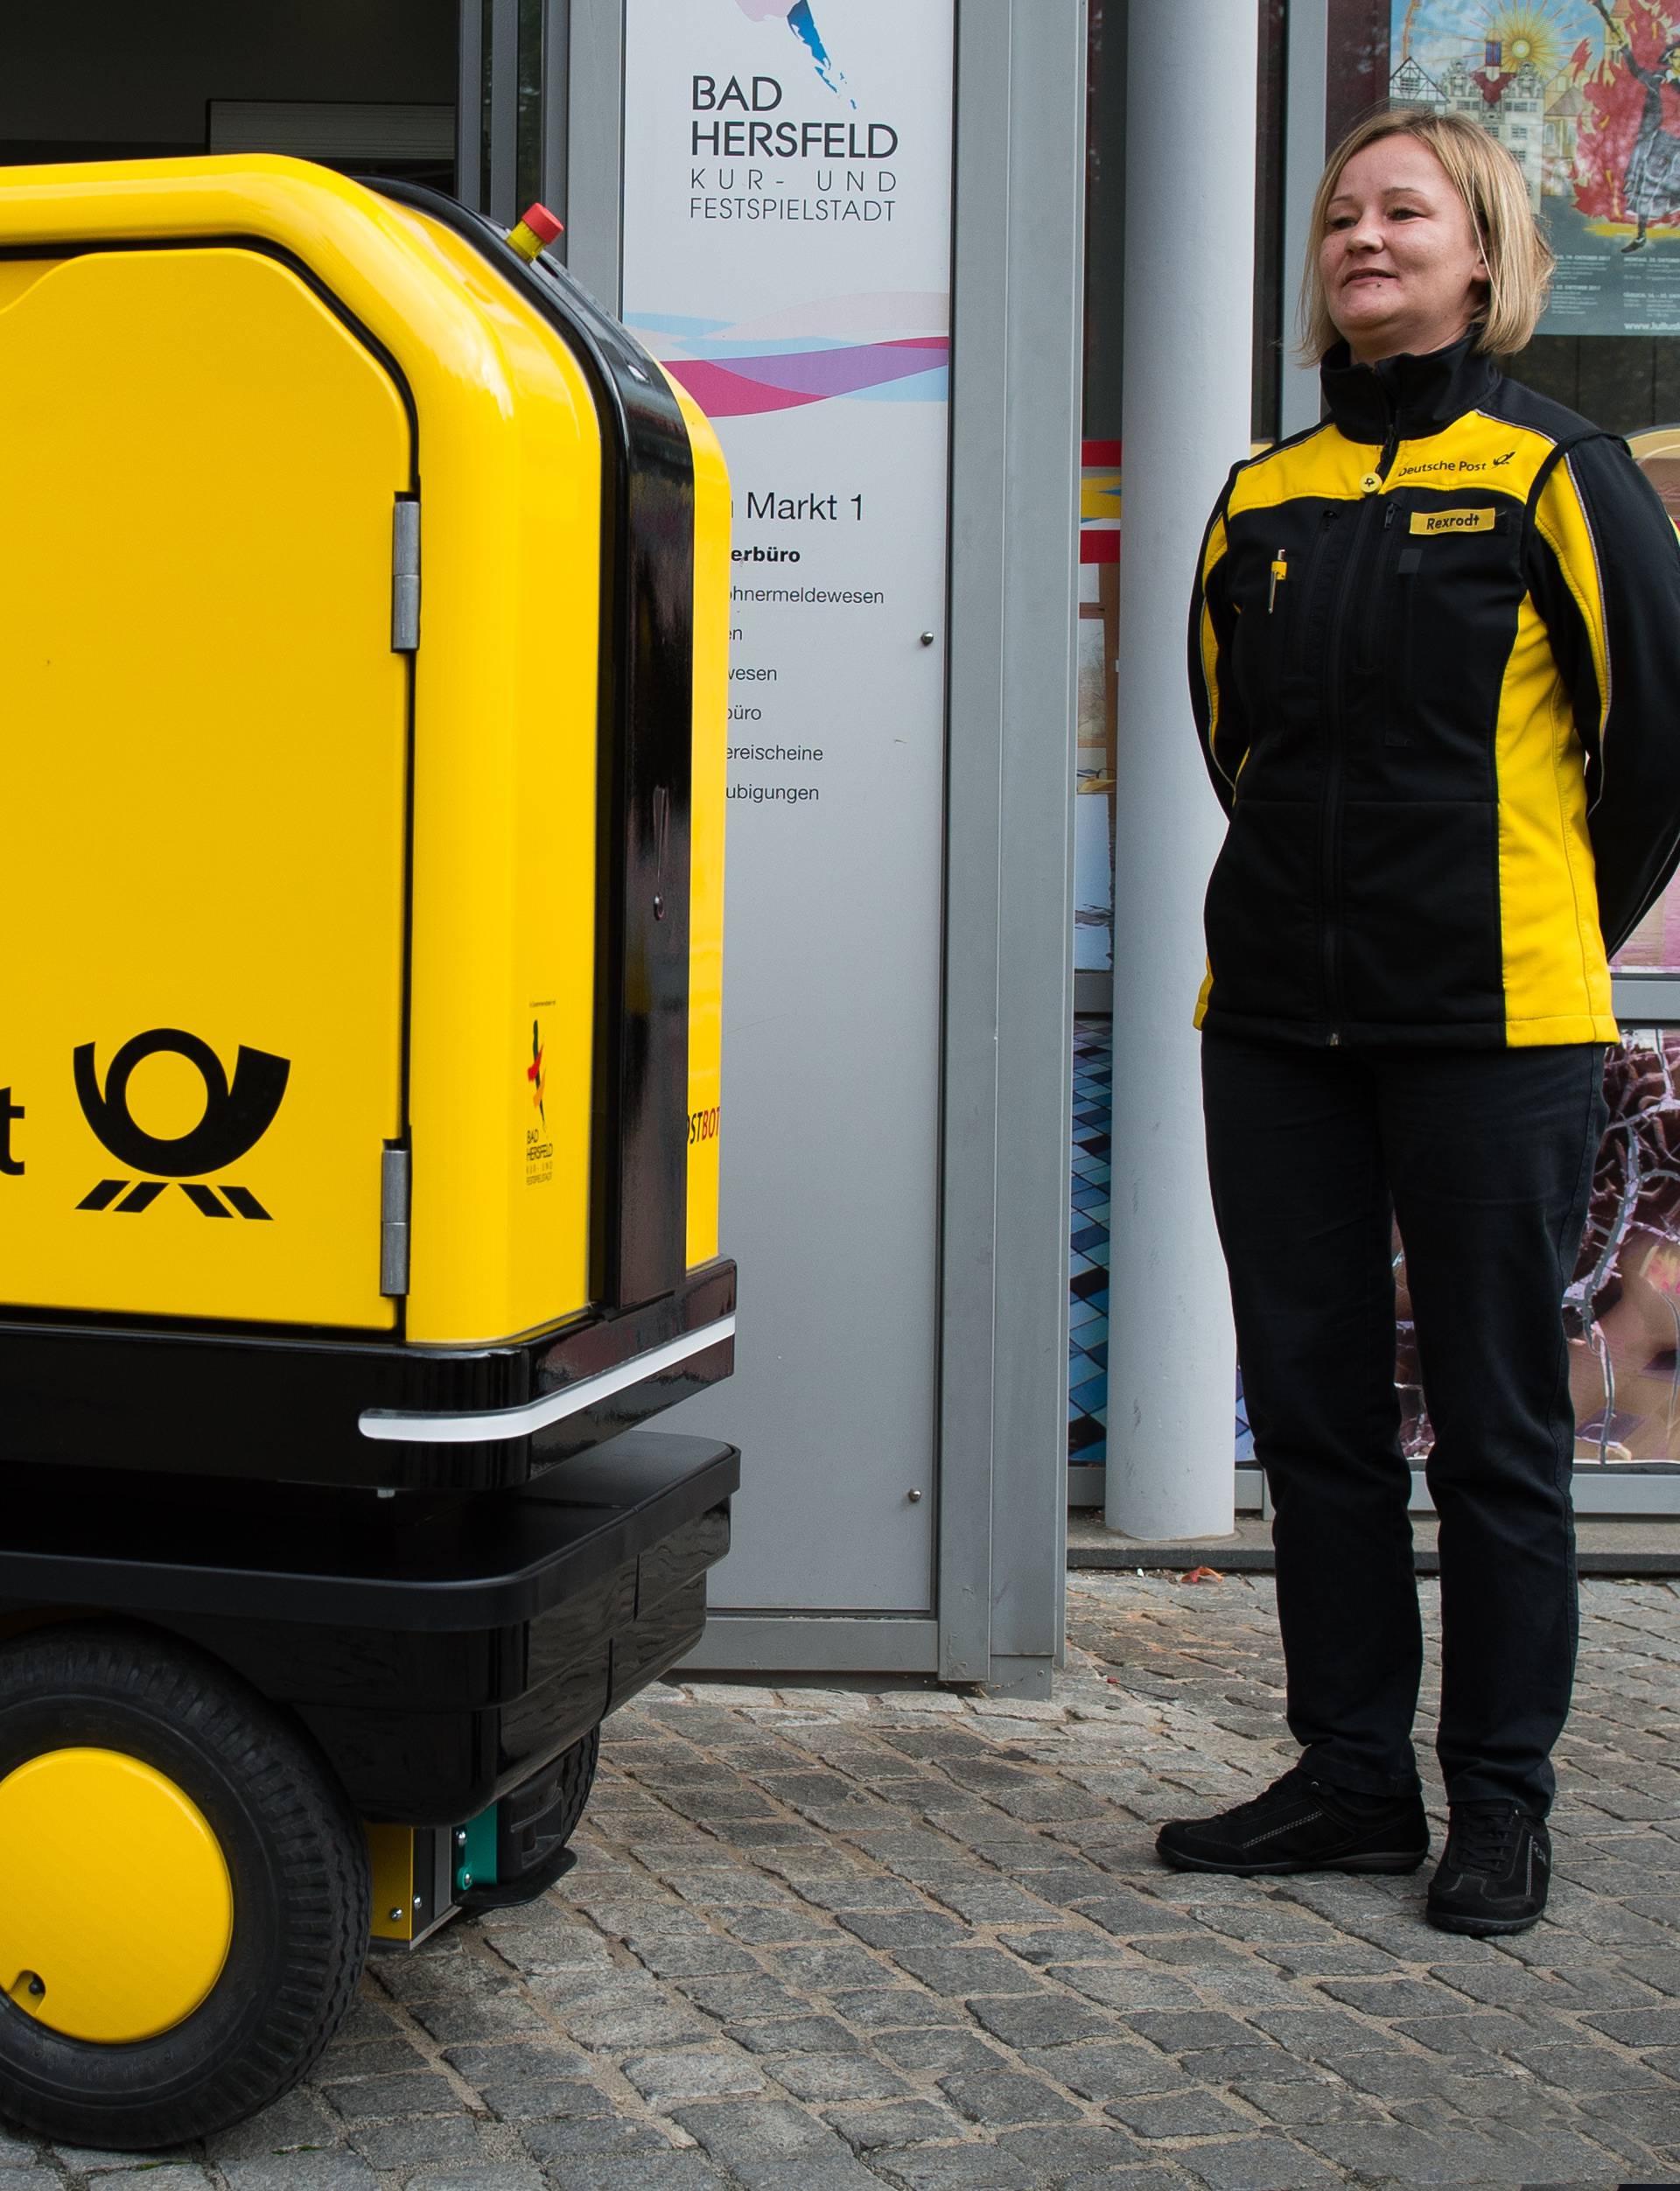 Deutsche Post tests 'PostBOT' robot